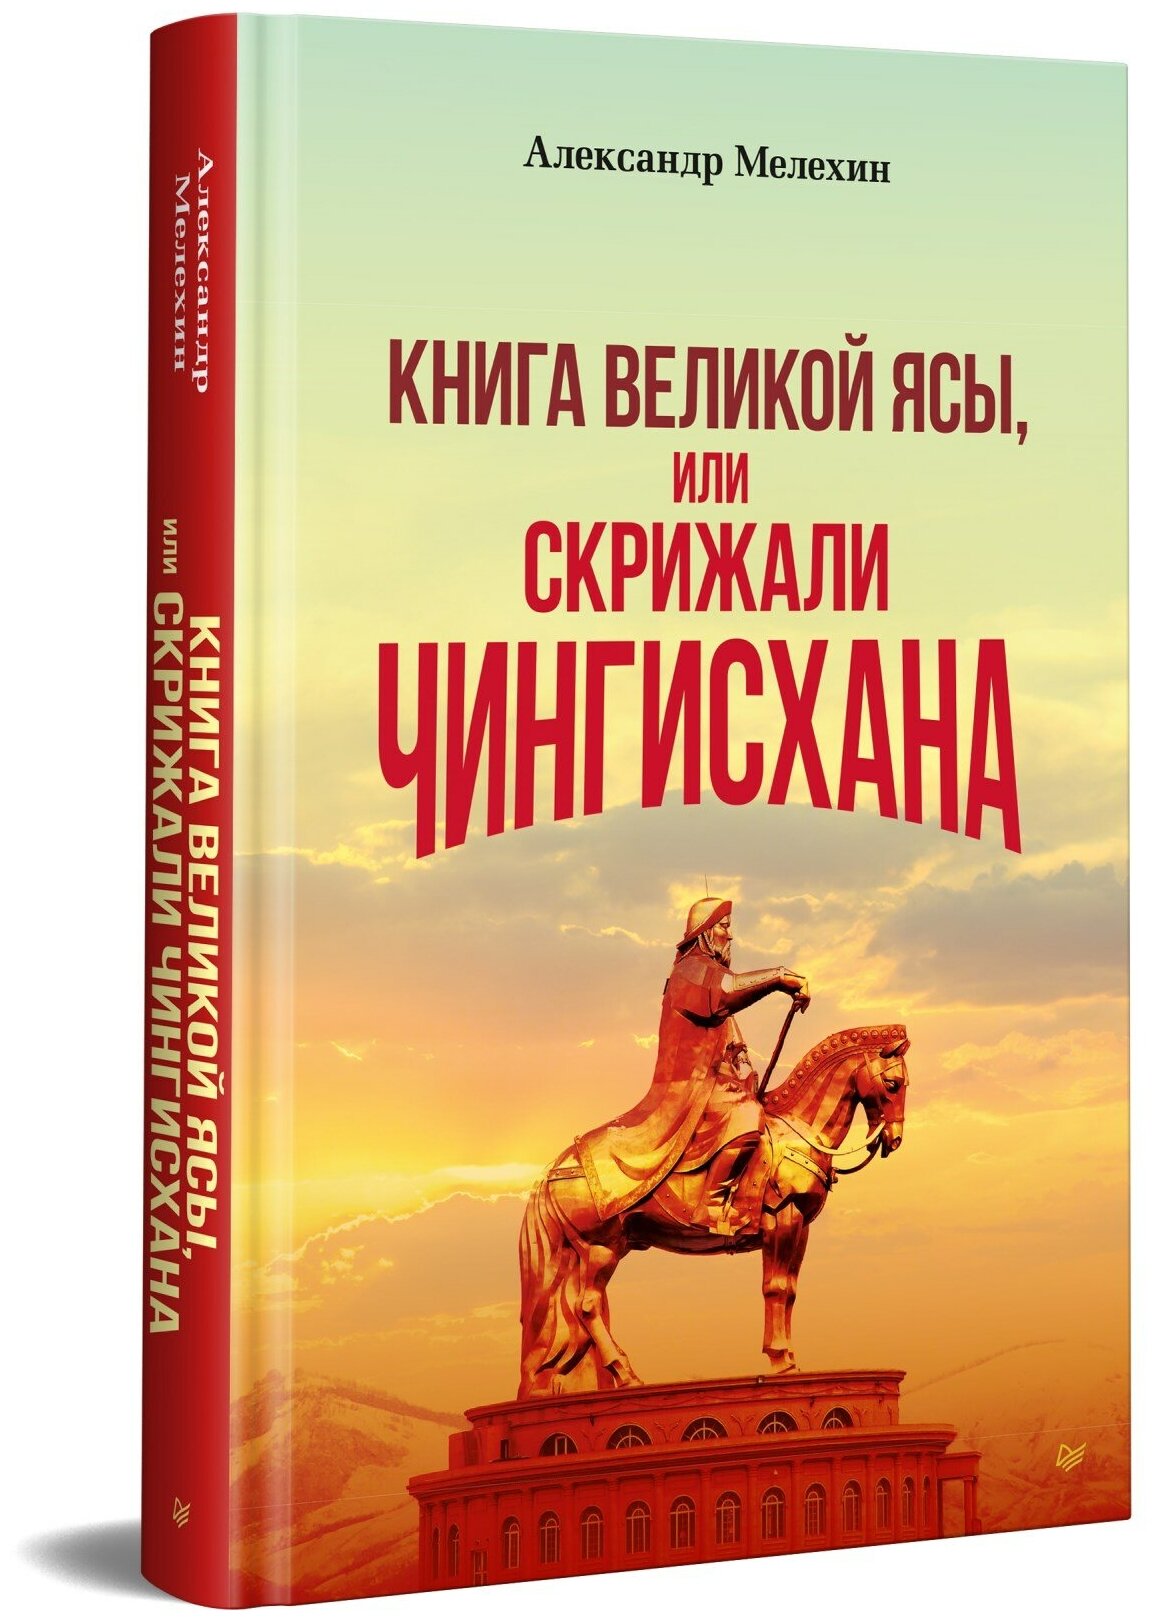 "Книга Великой Ясы", или скрижали Чингисхана - фото №1